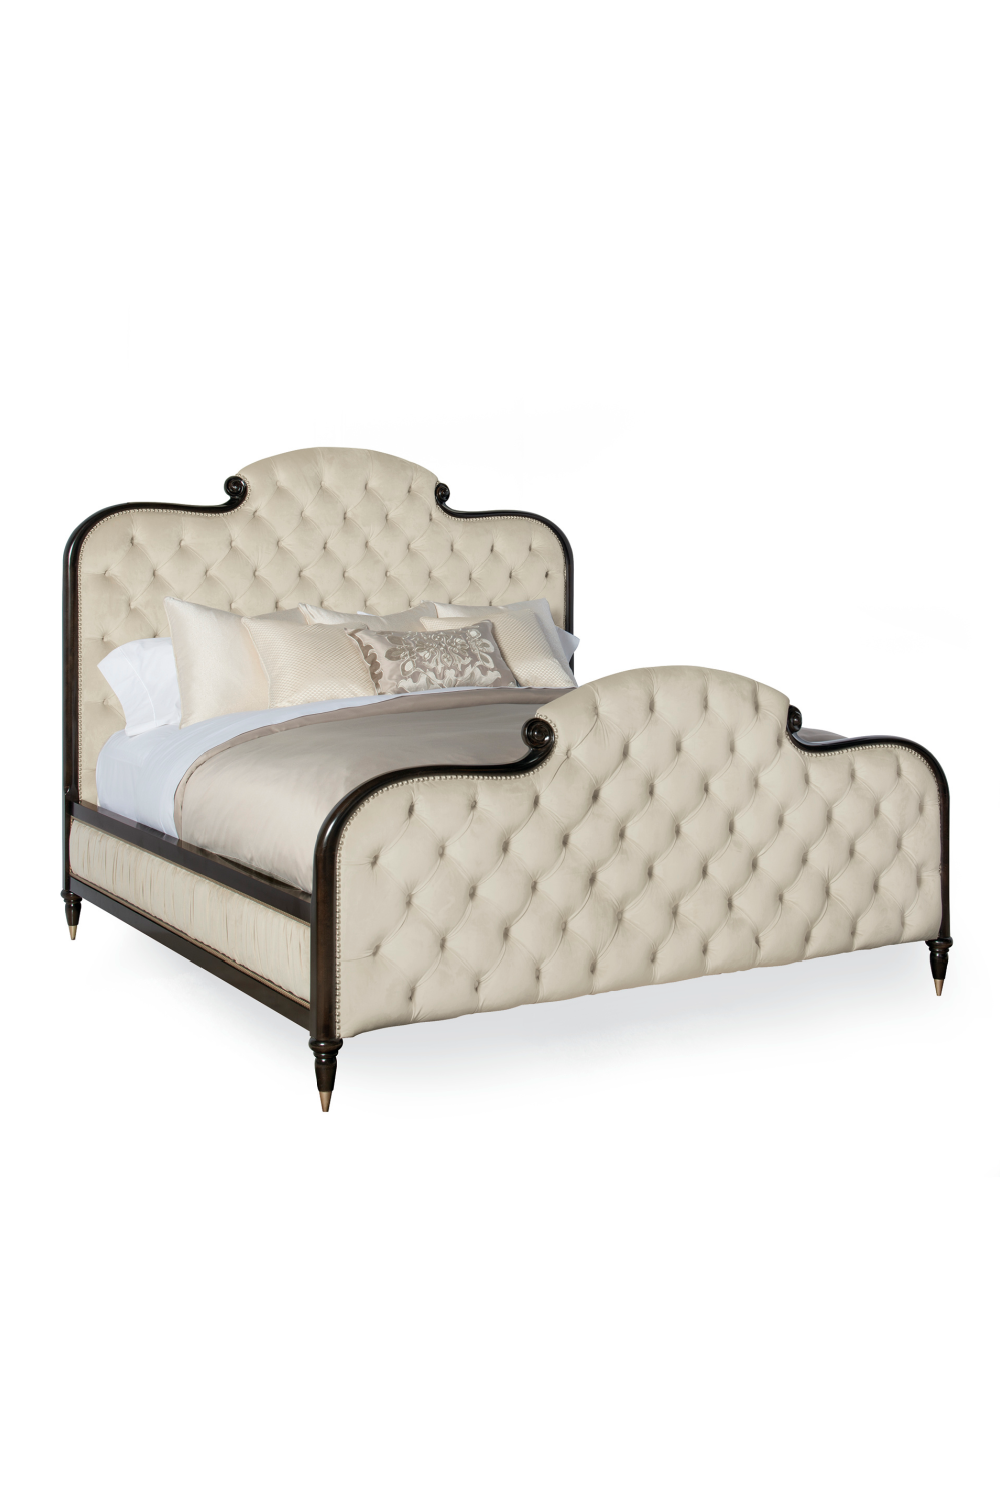 Cream Tufted Silk California King Bed | Caracole Everly | Oroa.com